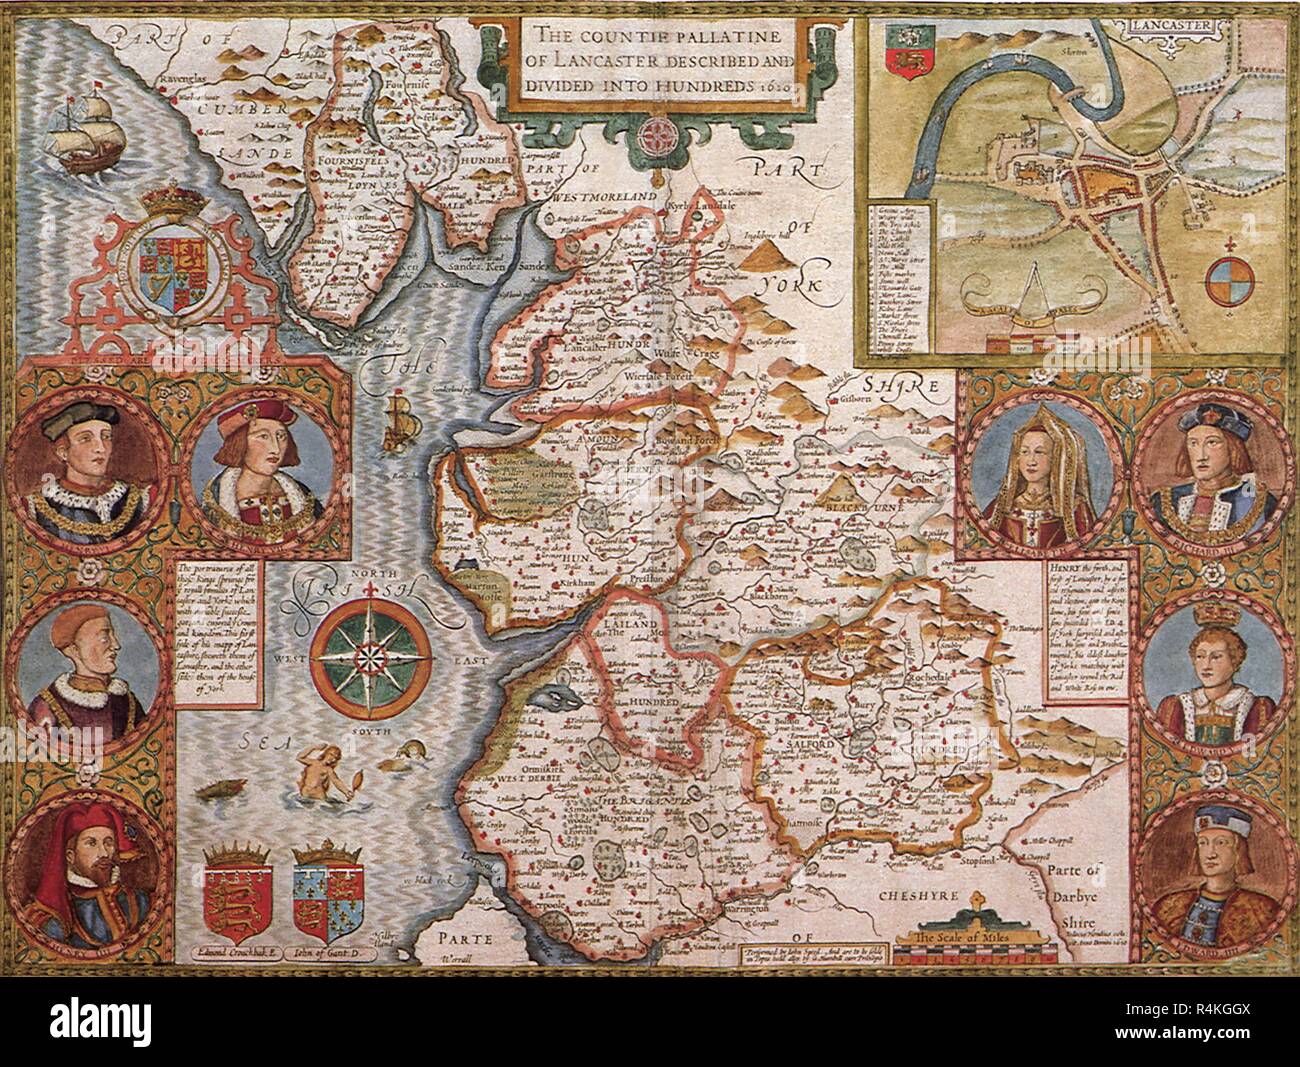 Ancient Map, Lancashire, 1611, Hondius, Jodocus. Stock Photo